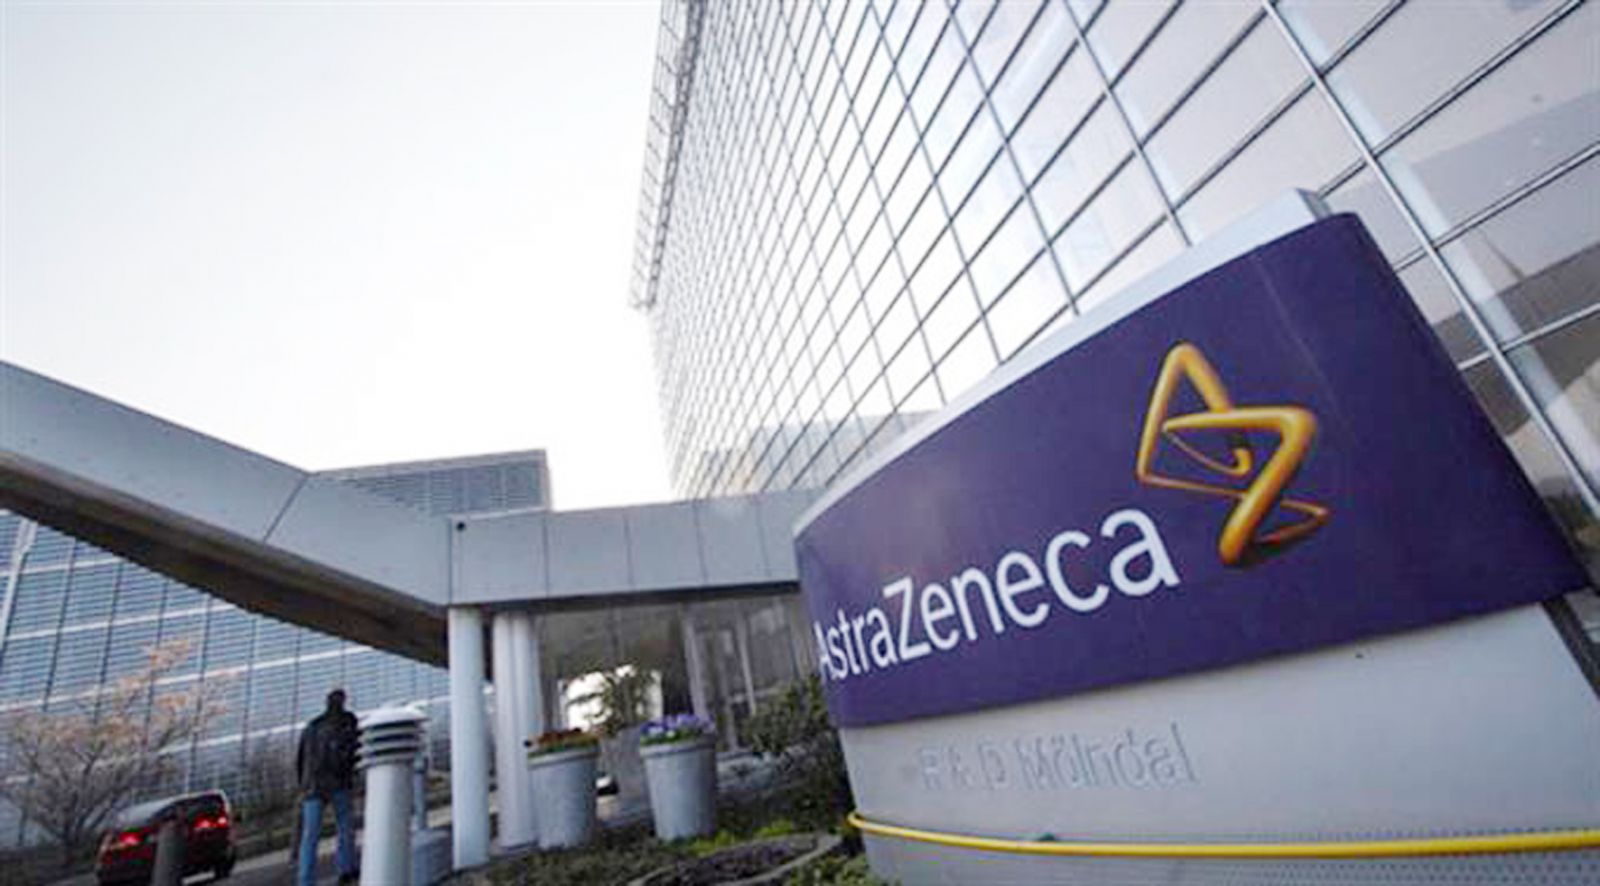  Tập đoàn AstraZeneca, Anh cam kết đầu tư khoảng 220 triệu USD vào Việt Nam giai đoạn 2020-2024